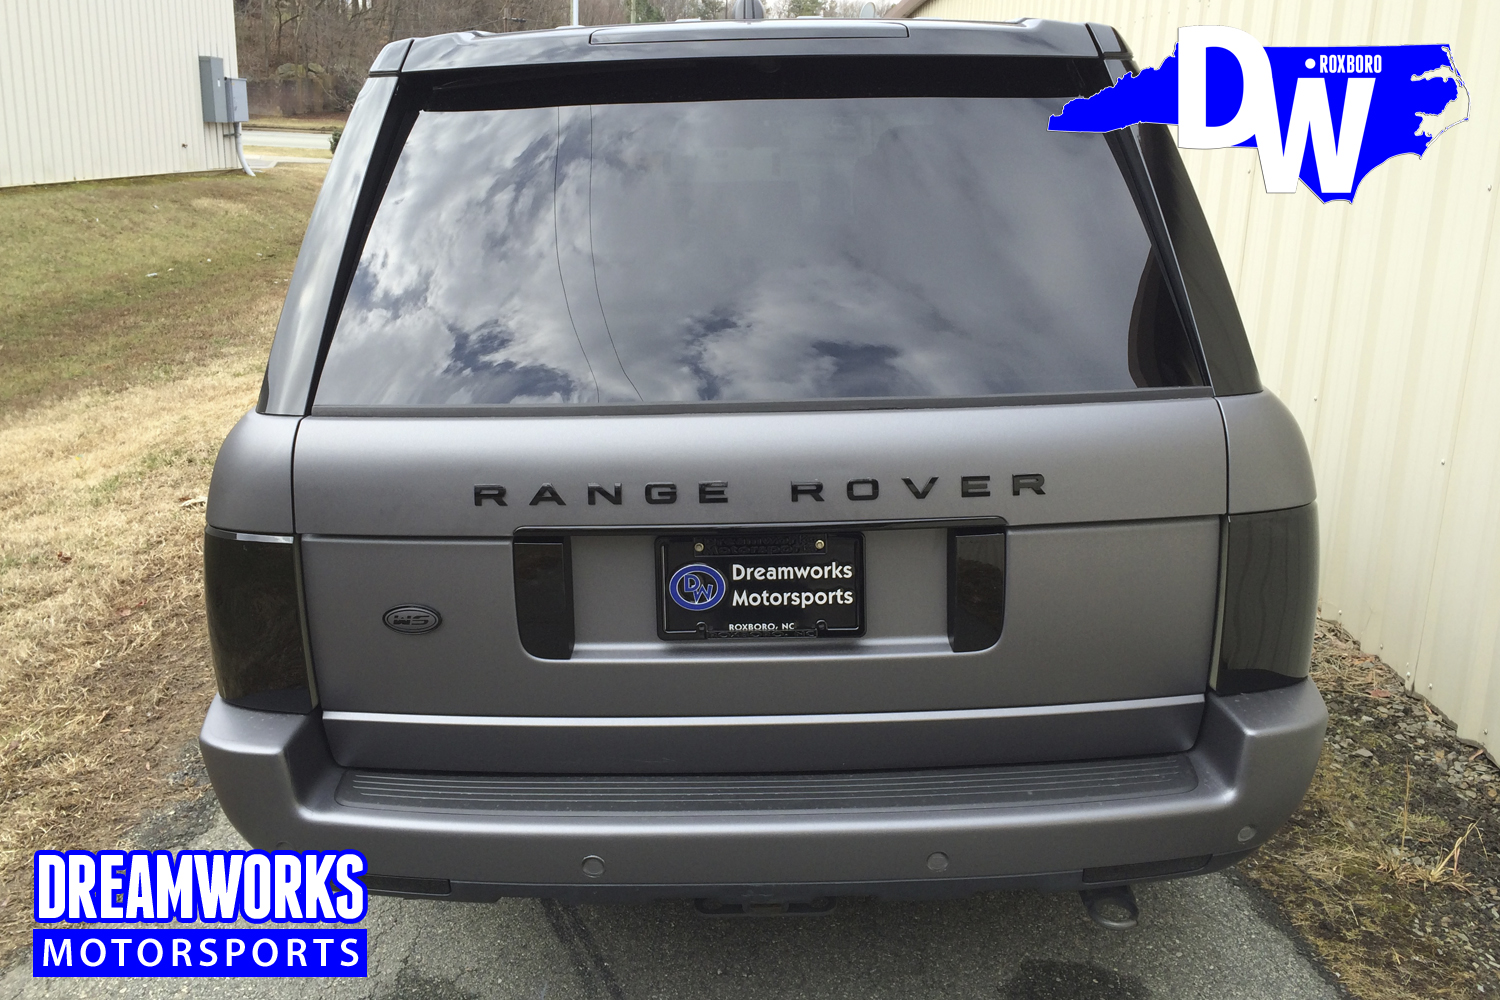 Wesley-Saunders-Range-Rover-By-Dreamworks-Motorsports-1.jpg